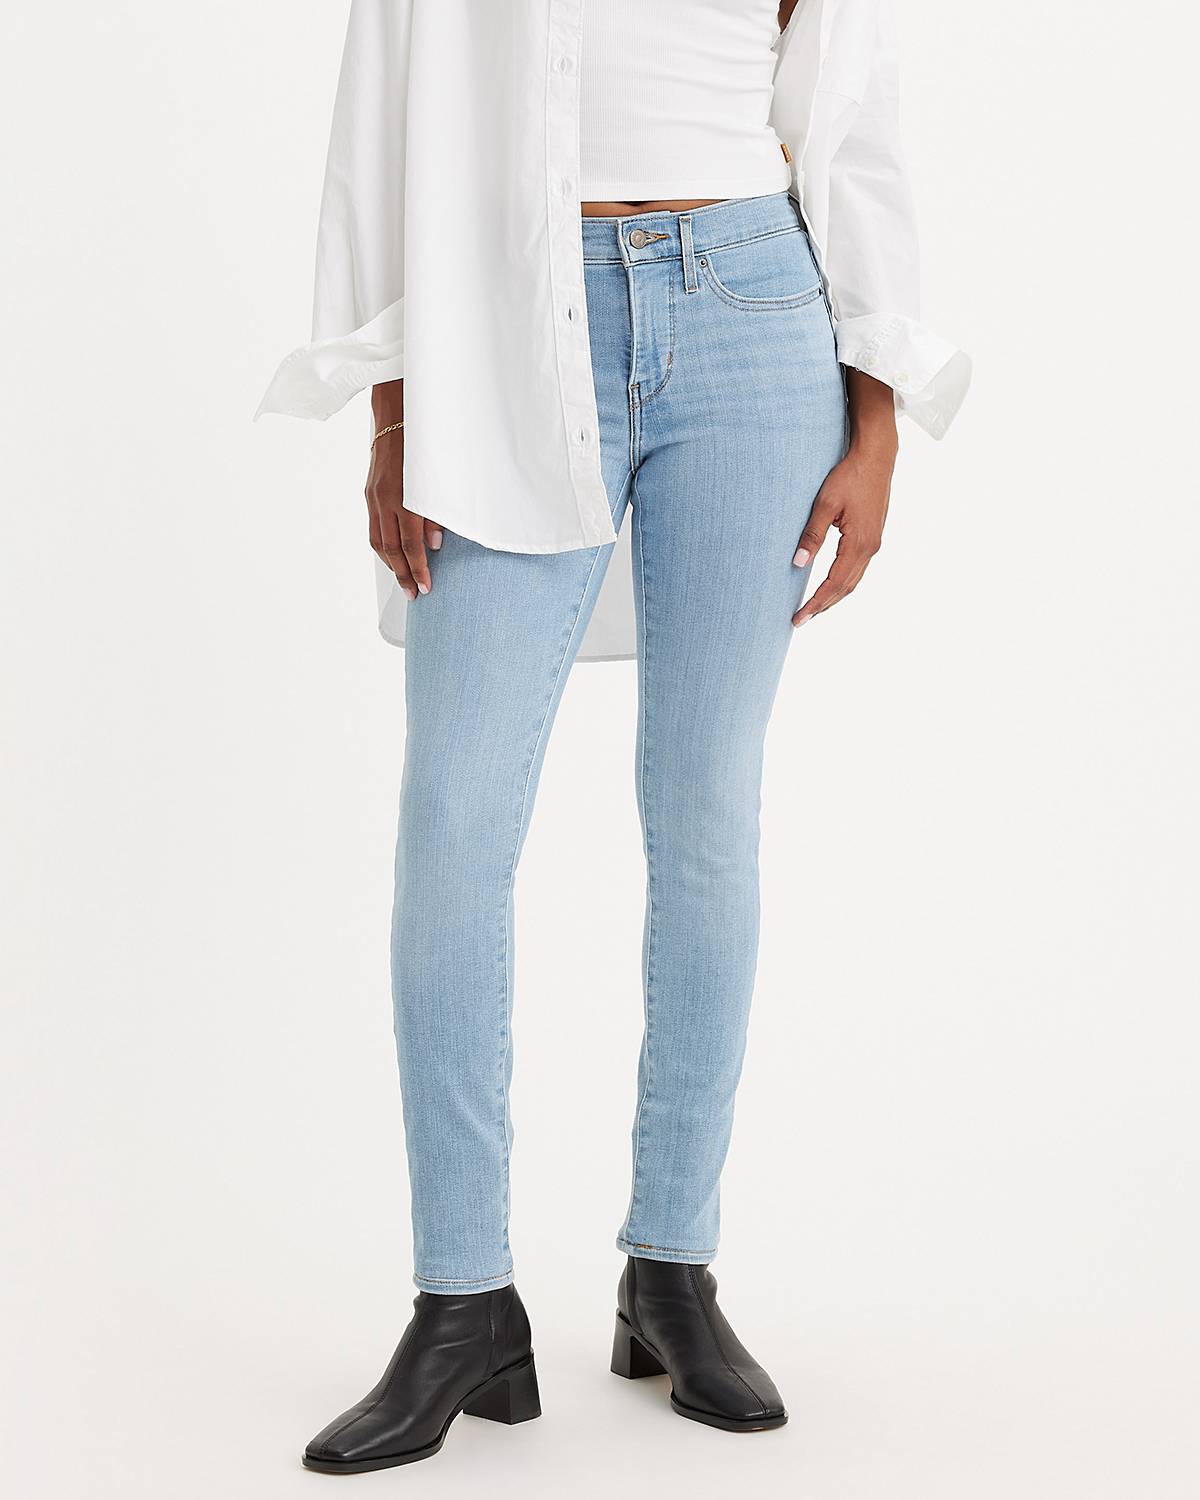 Women's Bell Bottom Jeans: Shop Women's Flare Jeans